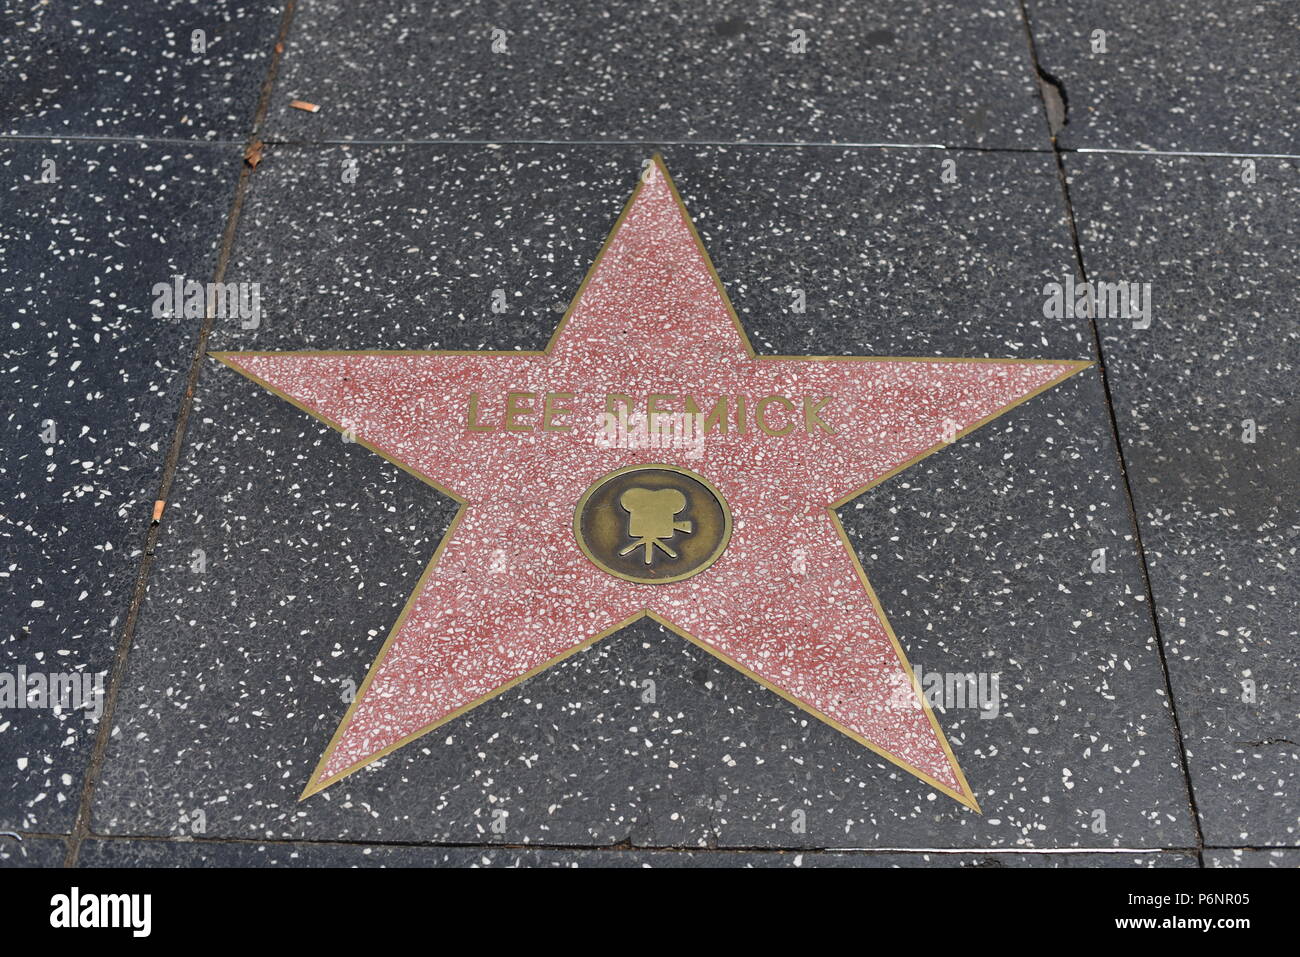 HOLLYWOOD, CA - 29 Giugno: Lee Remick stella sulla Hollywood Walk of Fame in Hollywood, la California il 29 giugno 2018. Foto Stock